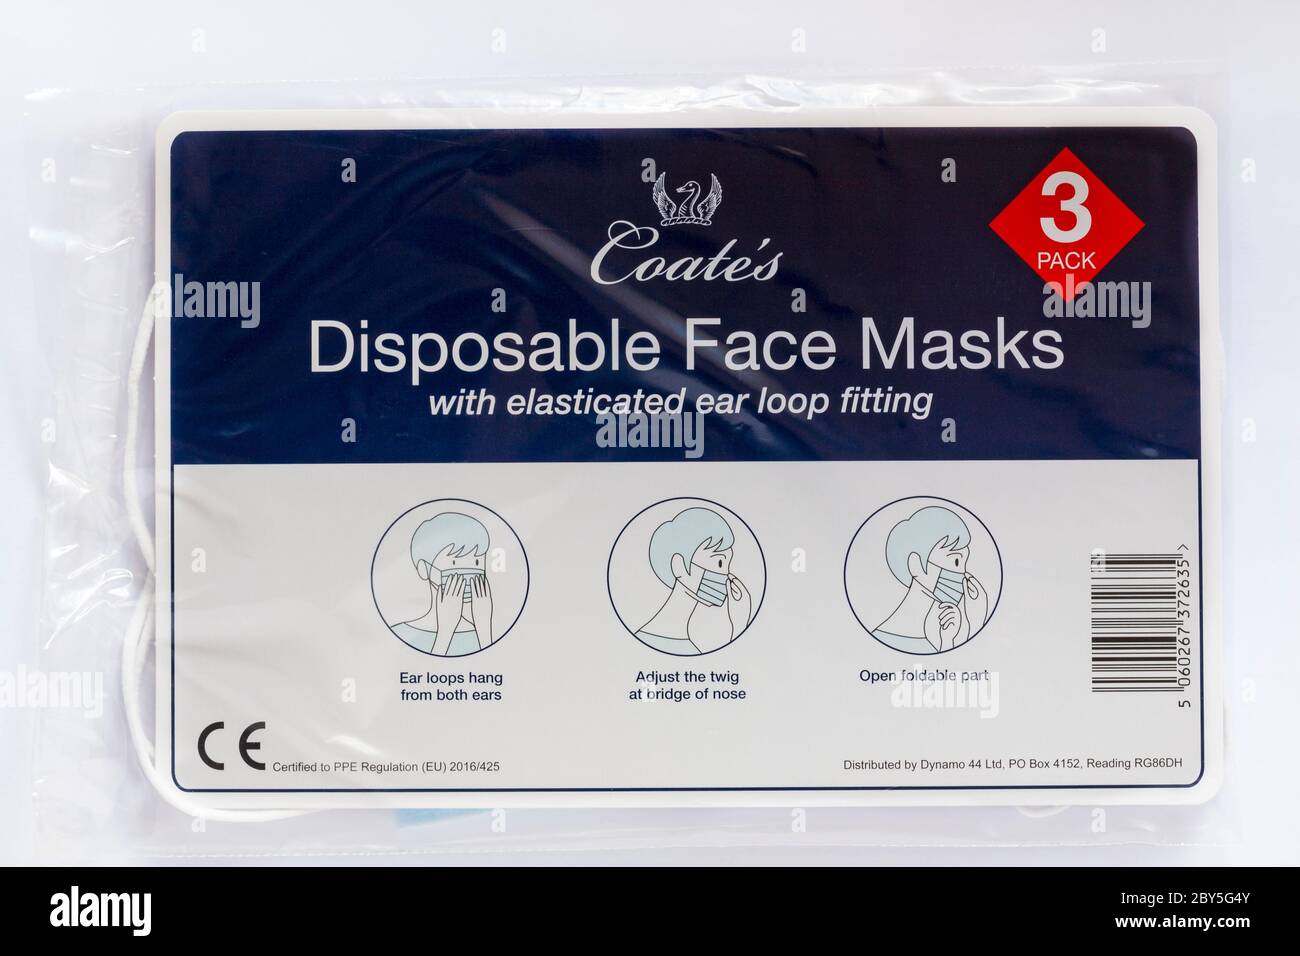 Confezione di maschere facciali monouso Coate con attacco elastico per l'orecchio per focolaio pandemico di Coronavirus Covid-19 isolato su sfondo bianco Foto Stock